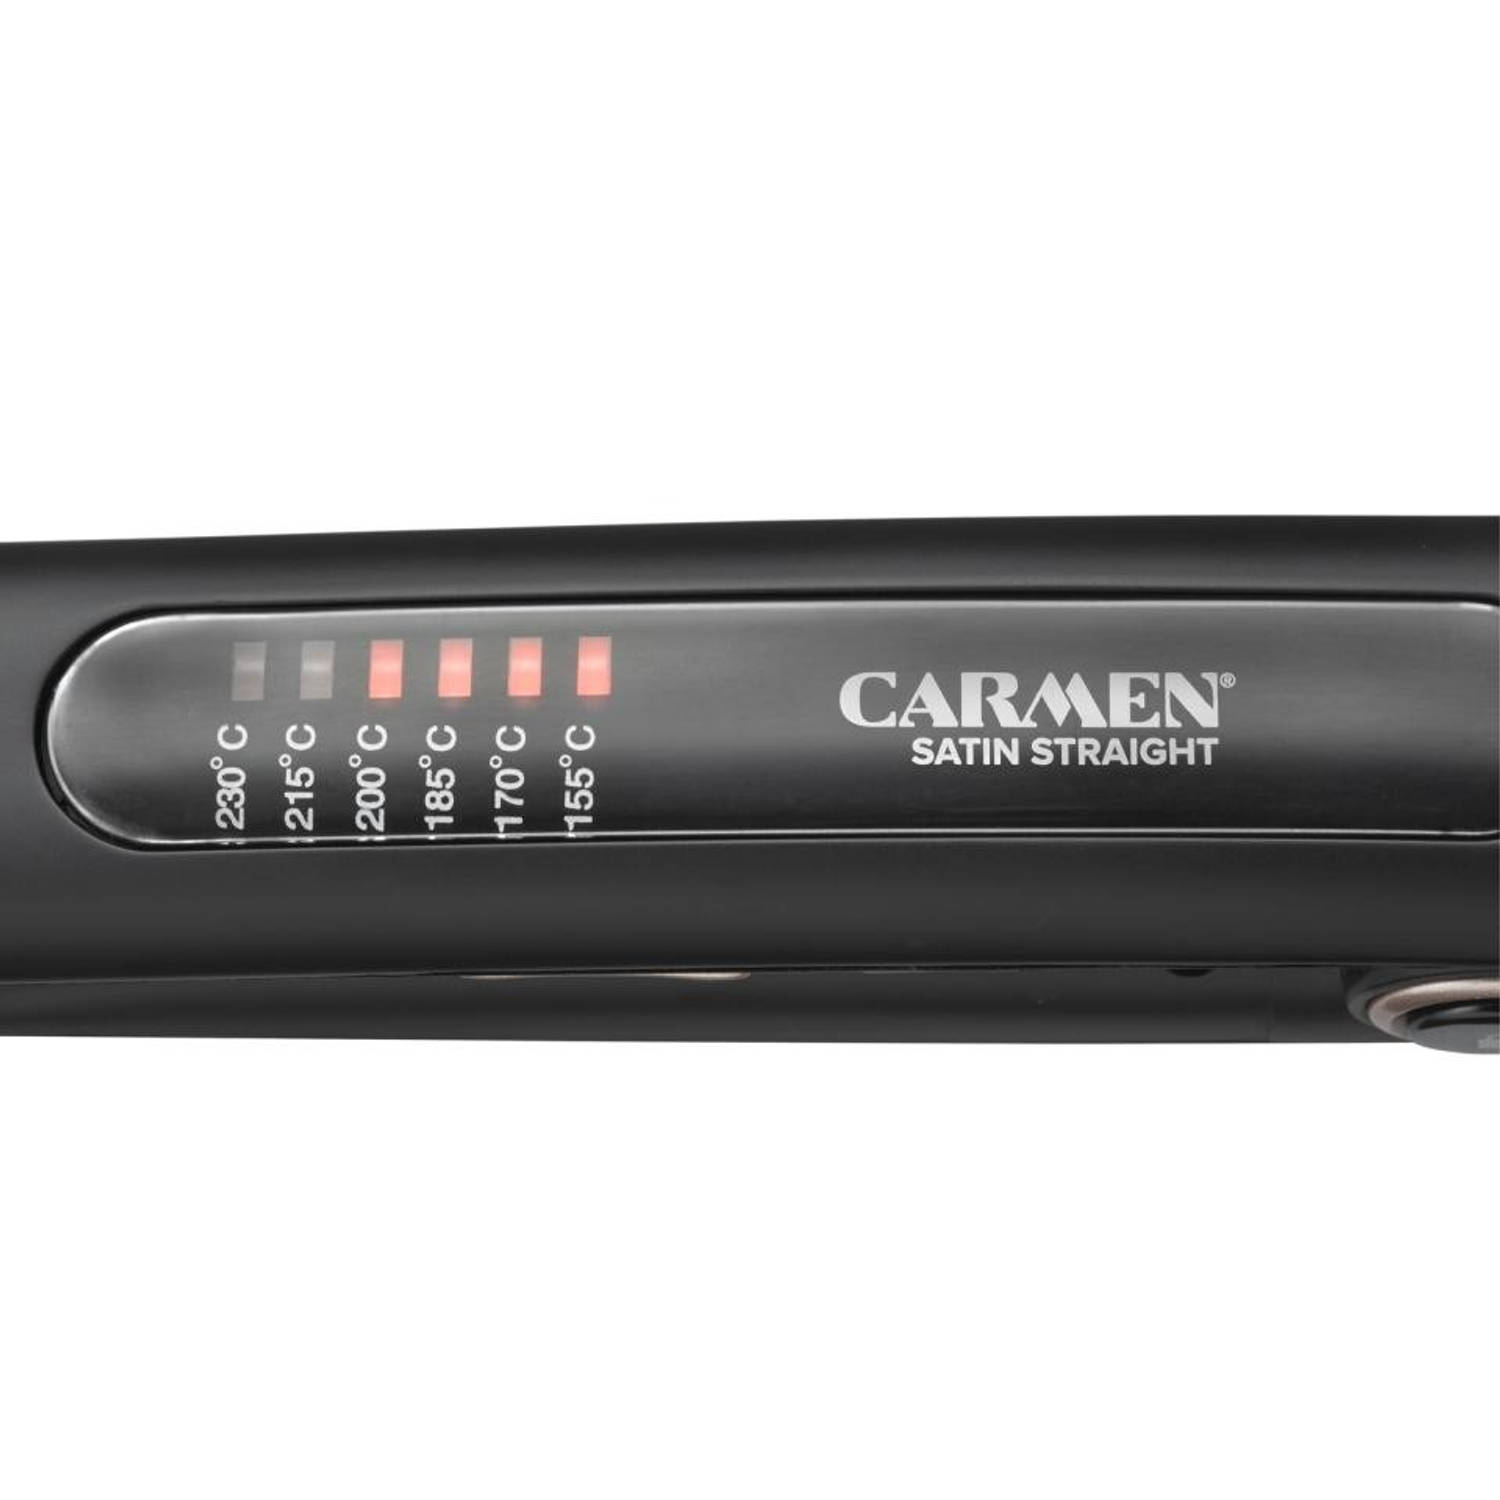 Afscheid genoeg Buiten adem Carmen CR3200 - Stijltang - 50 Watt - Keramisch - ION technologie | Blokker